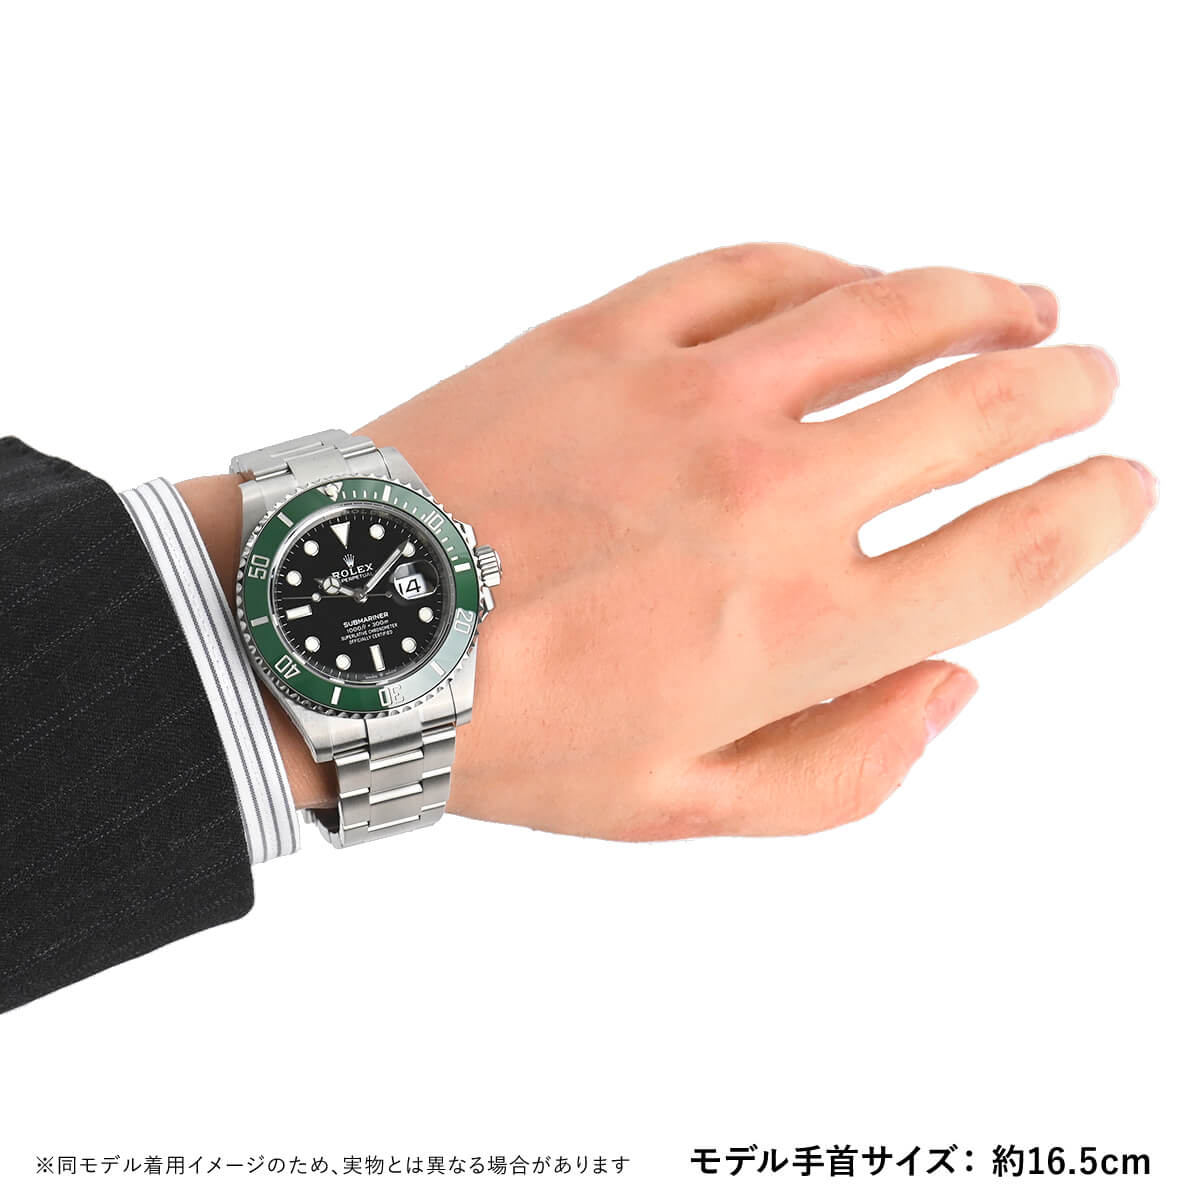 楽天市場 ロレックス Rolex サブマリーナーデイト lv 新品 メンズ 腕時計 送料無料 宝石広場